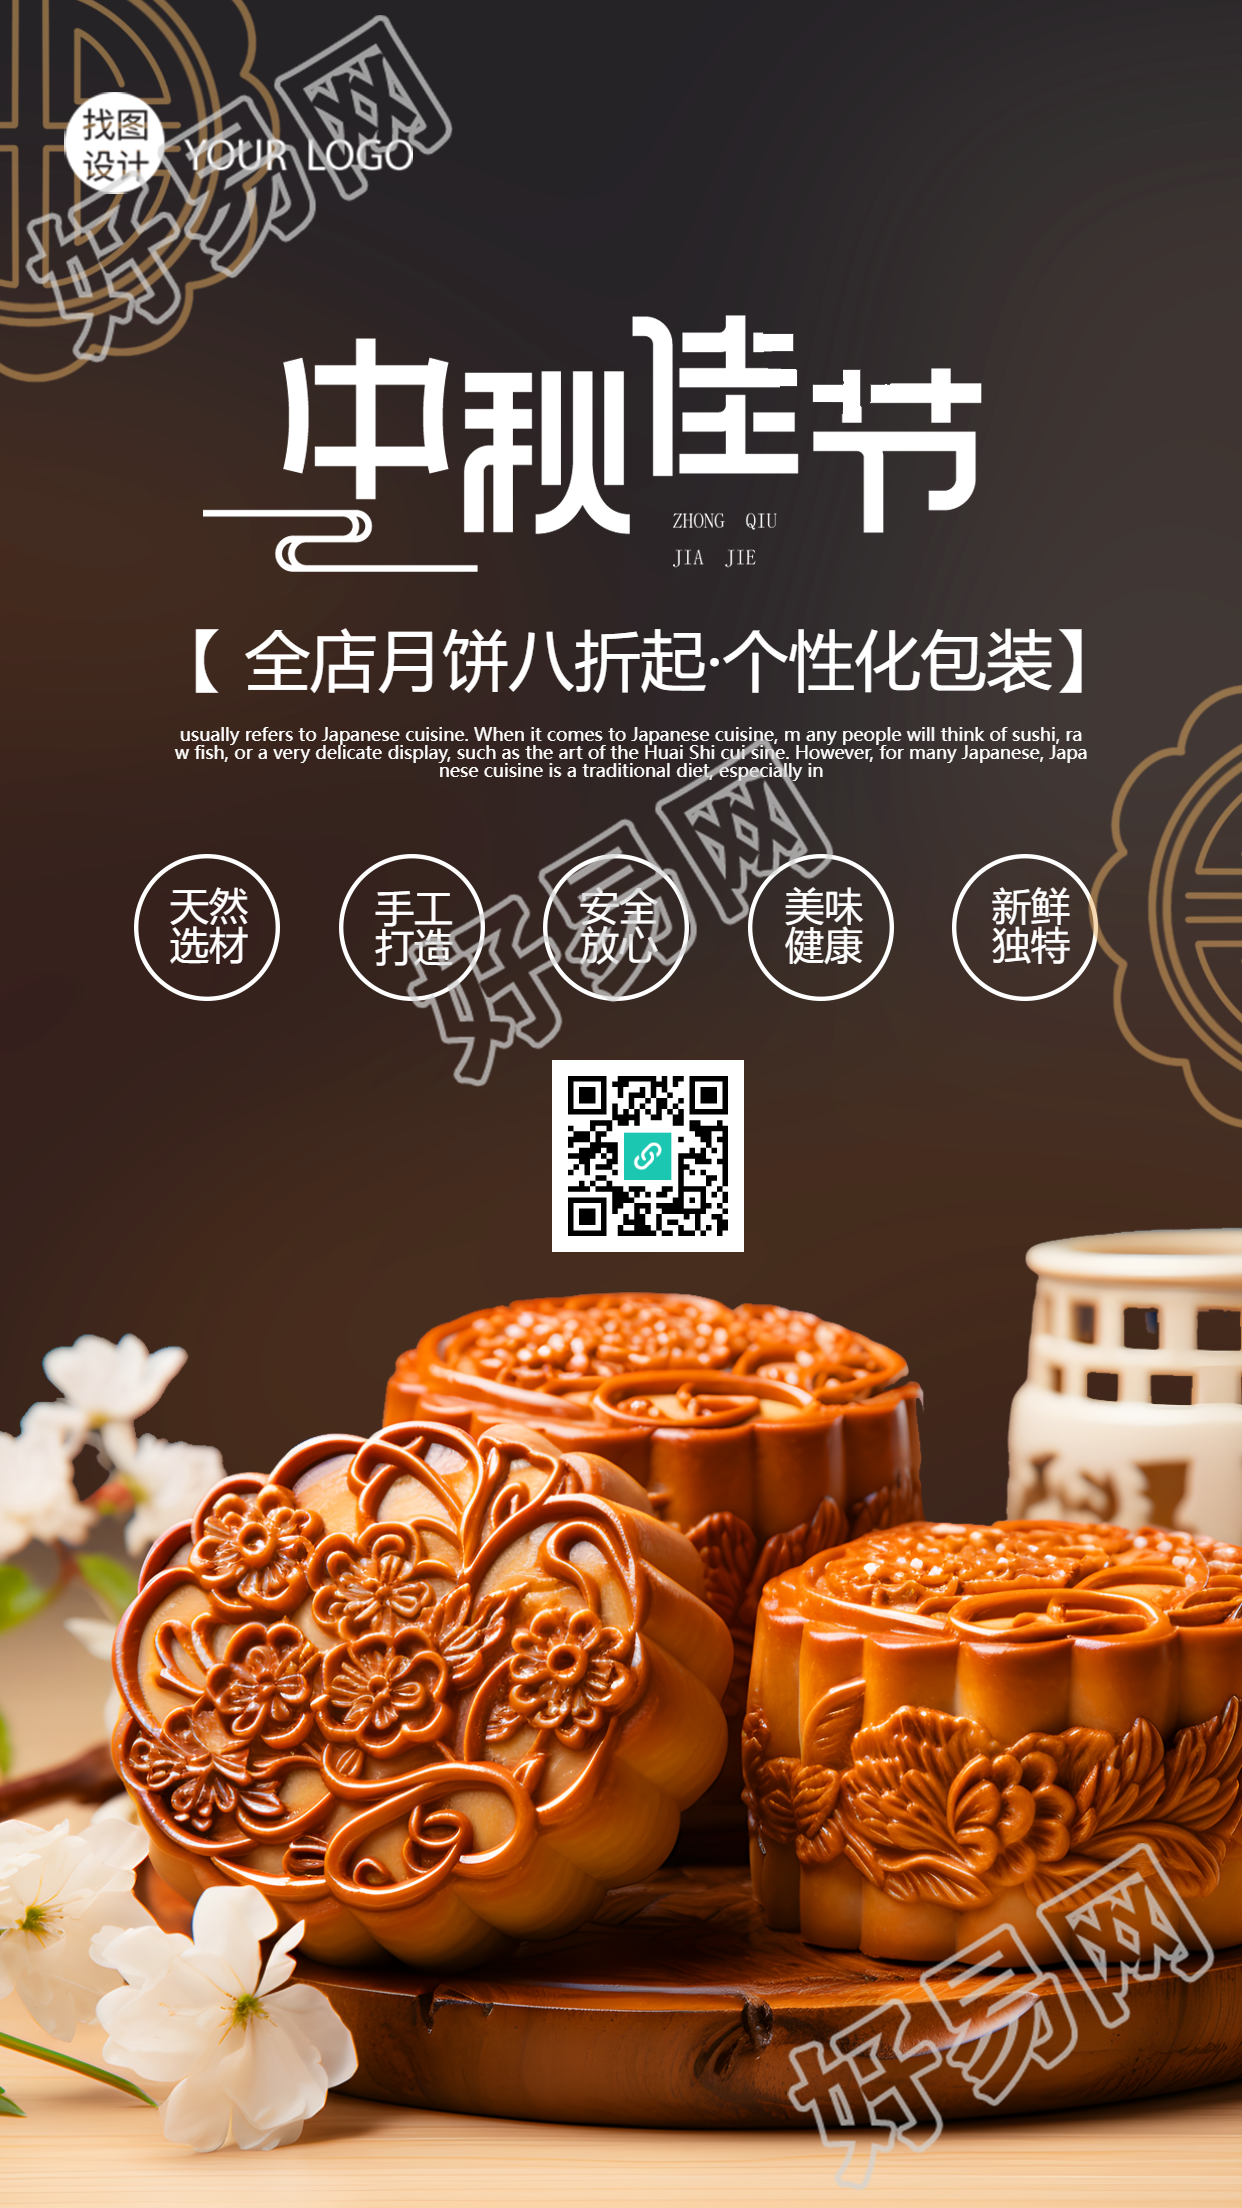 中秋节活动促销广式月饼实景手机海报